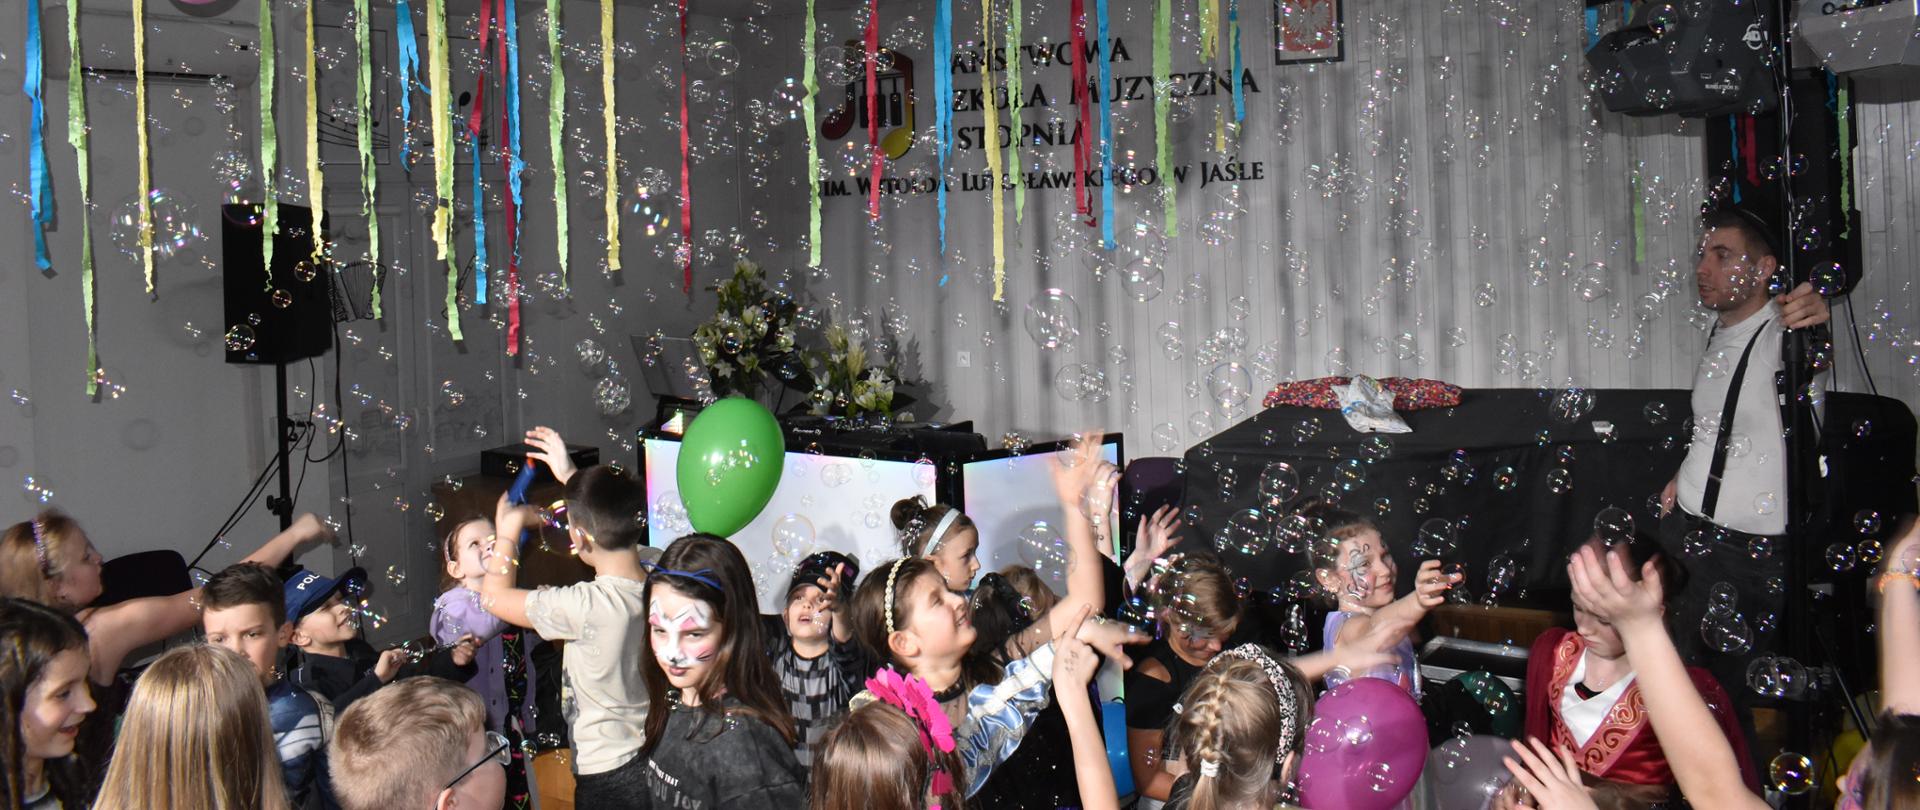 Grupa uczniów tańczących w auli PSM wśród dużej ilości baniek mydlanych. Ogólna kolorystyka – biała i kolorowa.